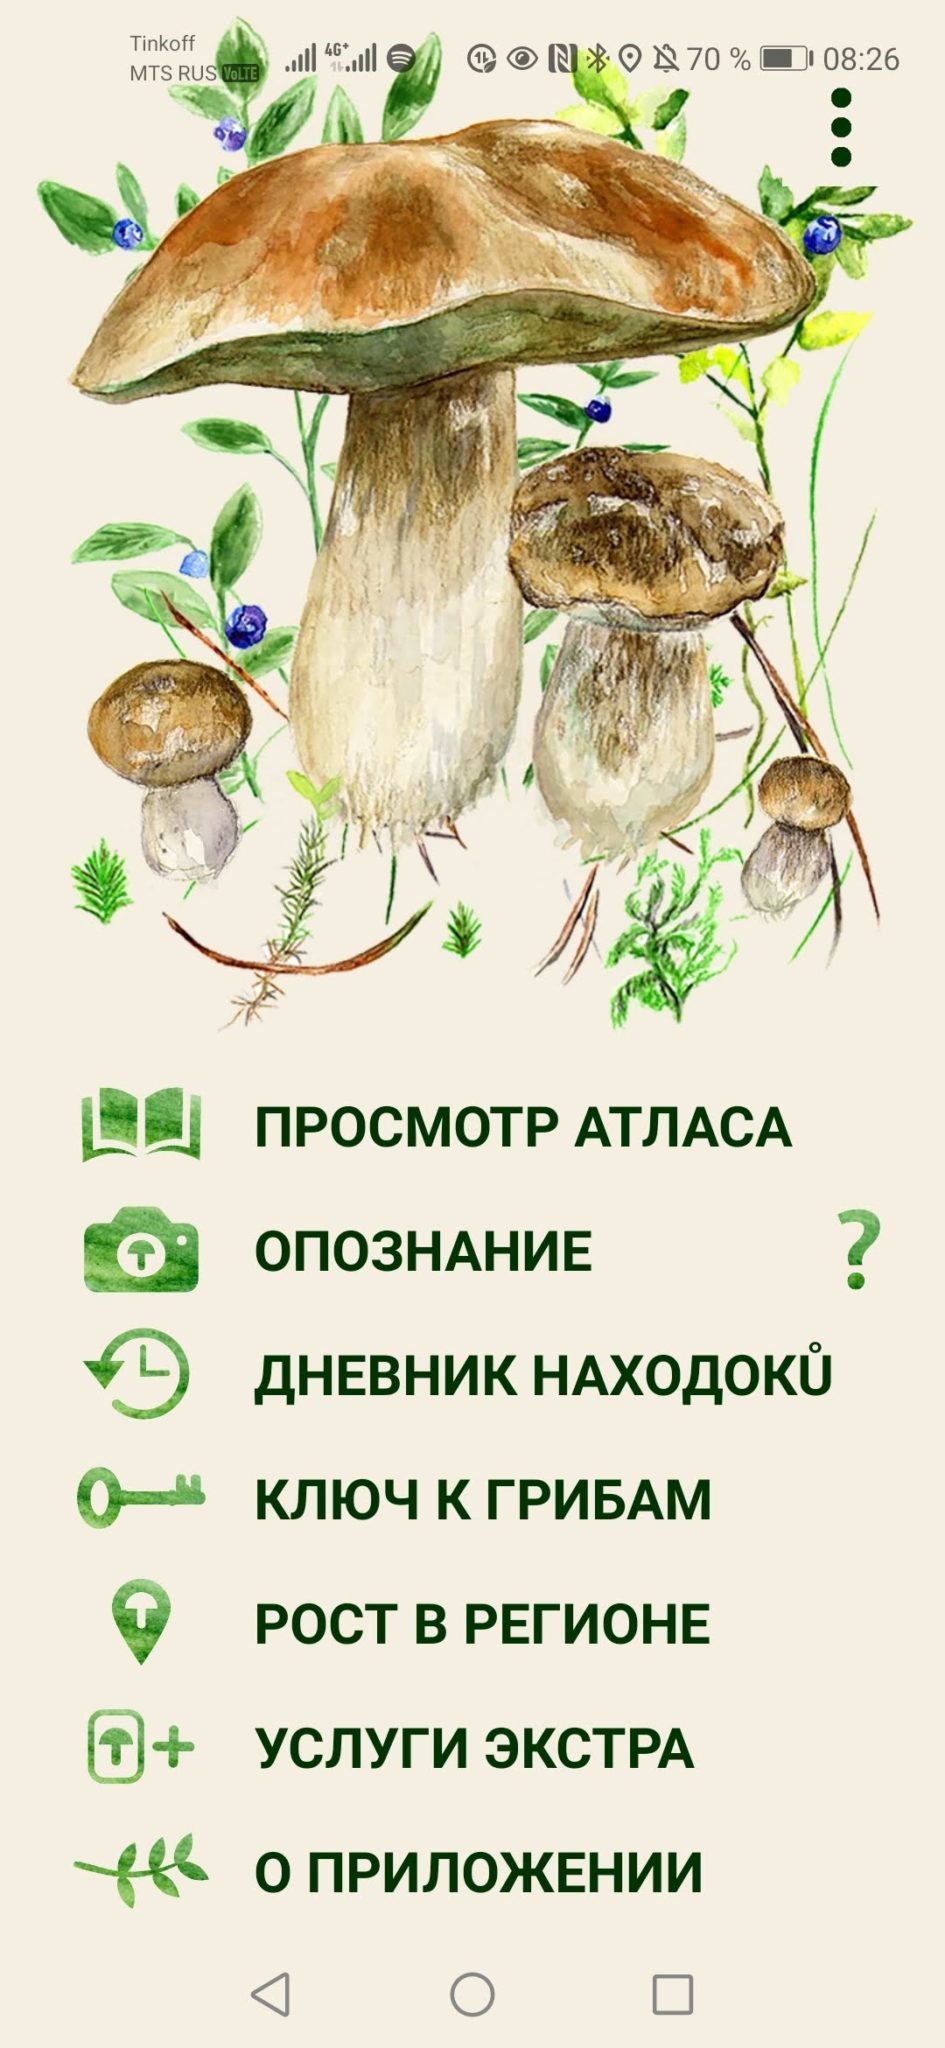 Справочник грибов с фотографиями